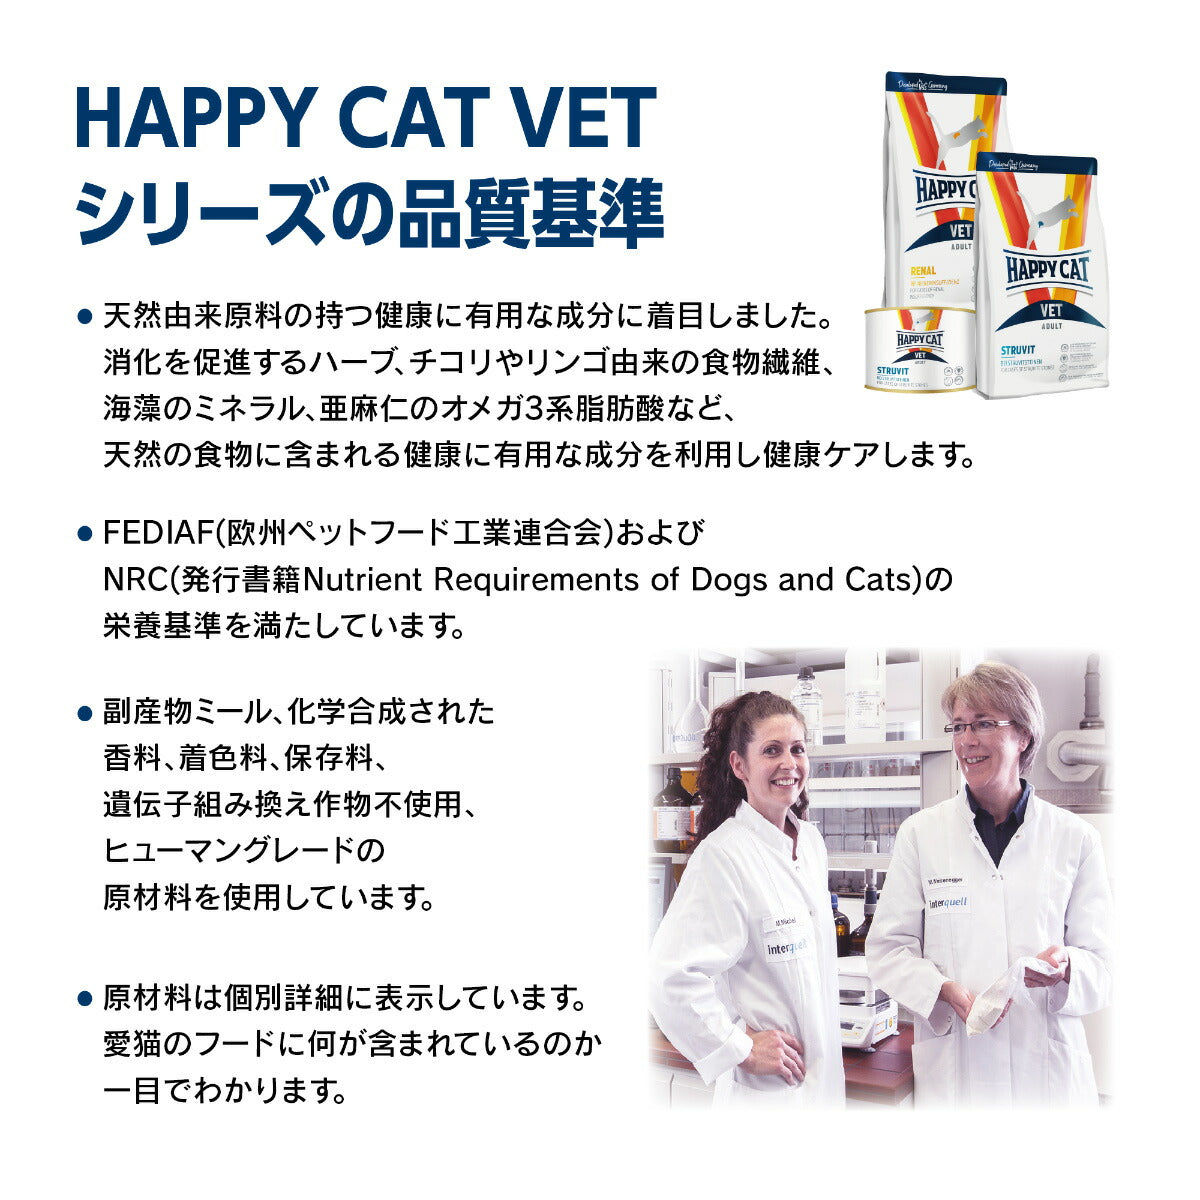 ハッピーキャット HAPPY CAT VET キャットフード 猫用療法食 リーナル（腎臓ケア） 4kg【送料無料】